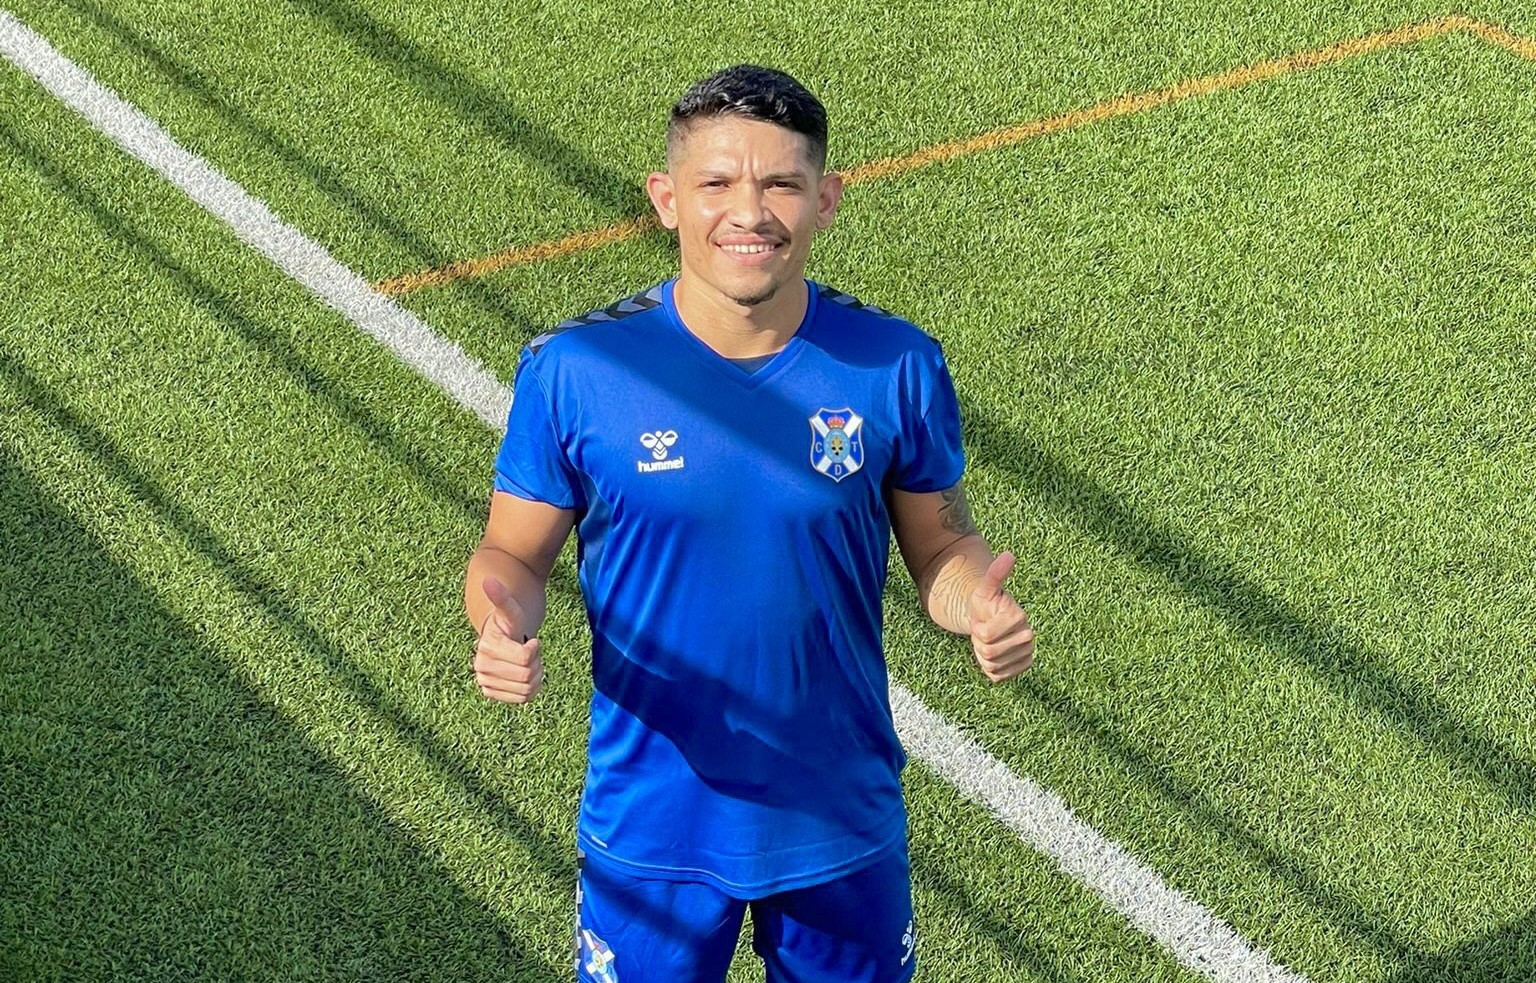 El CD Tenerife ficha al centrocampista brasileño Fabricio Assis para el filial